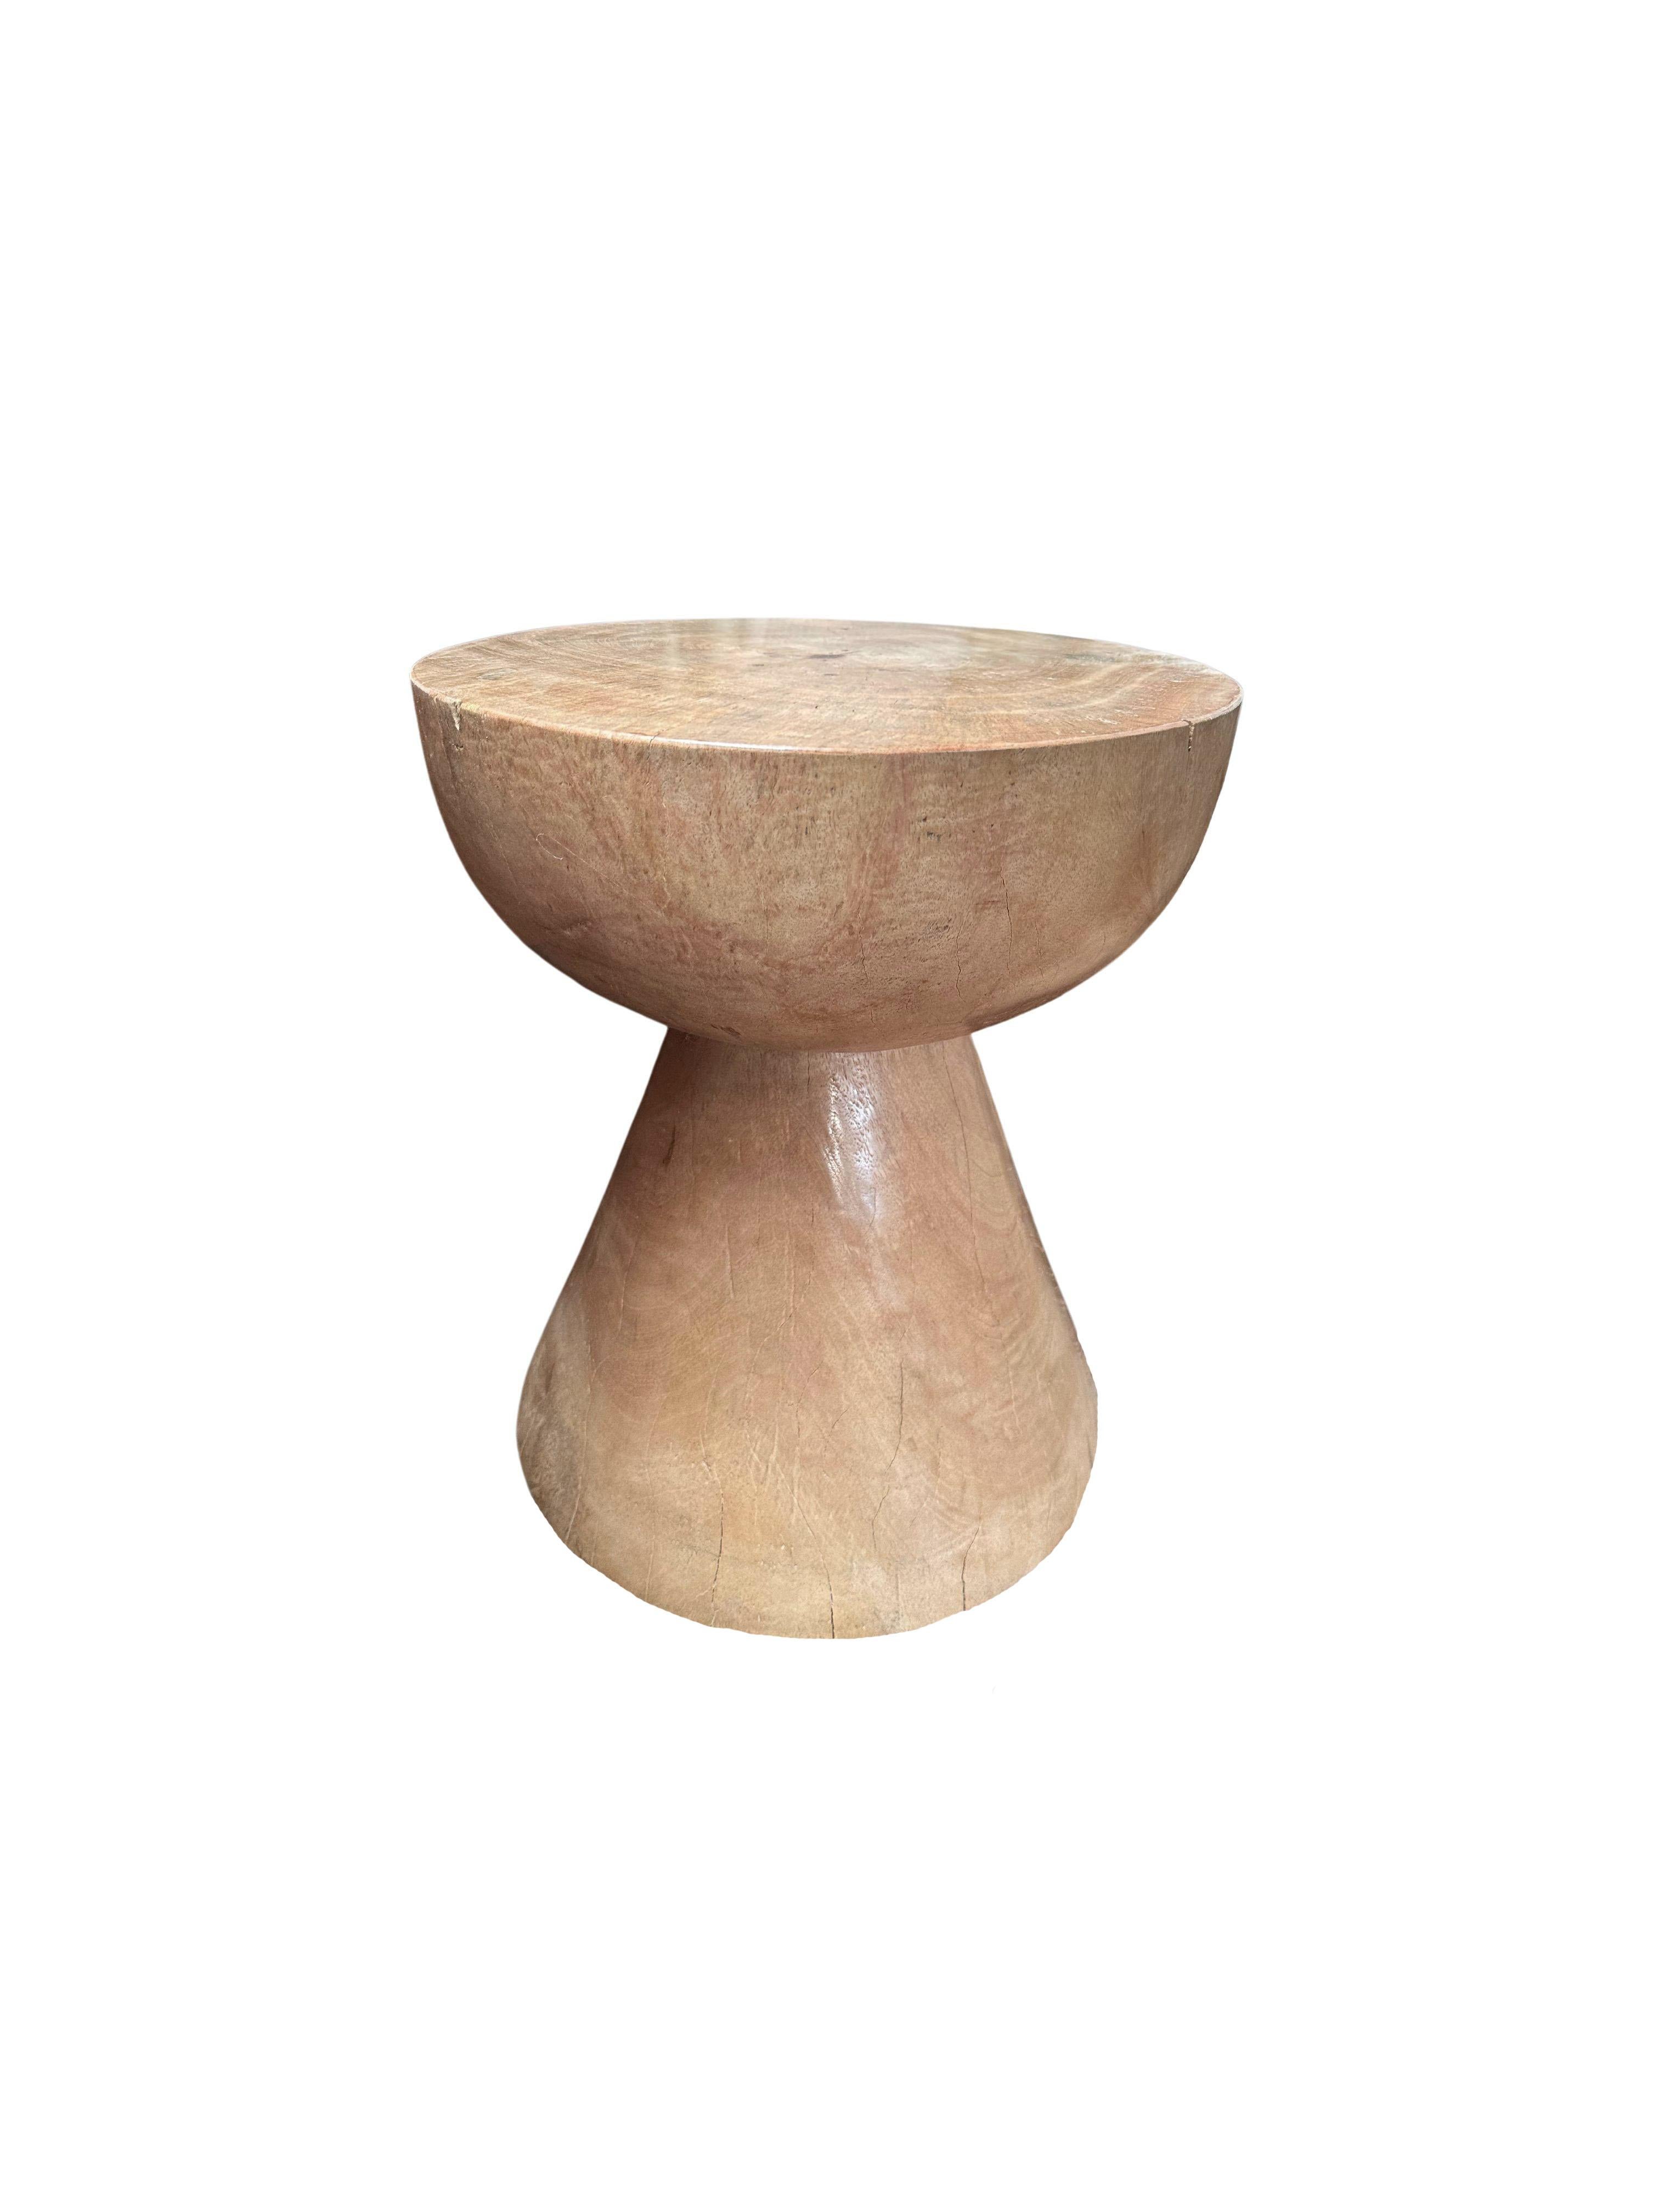 Dieser wunderbar skulpturale runde Beistelltisch hat eine gebleichte Oberfläche, die dem Holz einen verwaschenen Ton verleiht. Die neutrale Farbgebung des Tisches macht ihn perfekt für jeden Raum. Er wurde aus einem massiven Mangoholzblock gefertigt